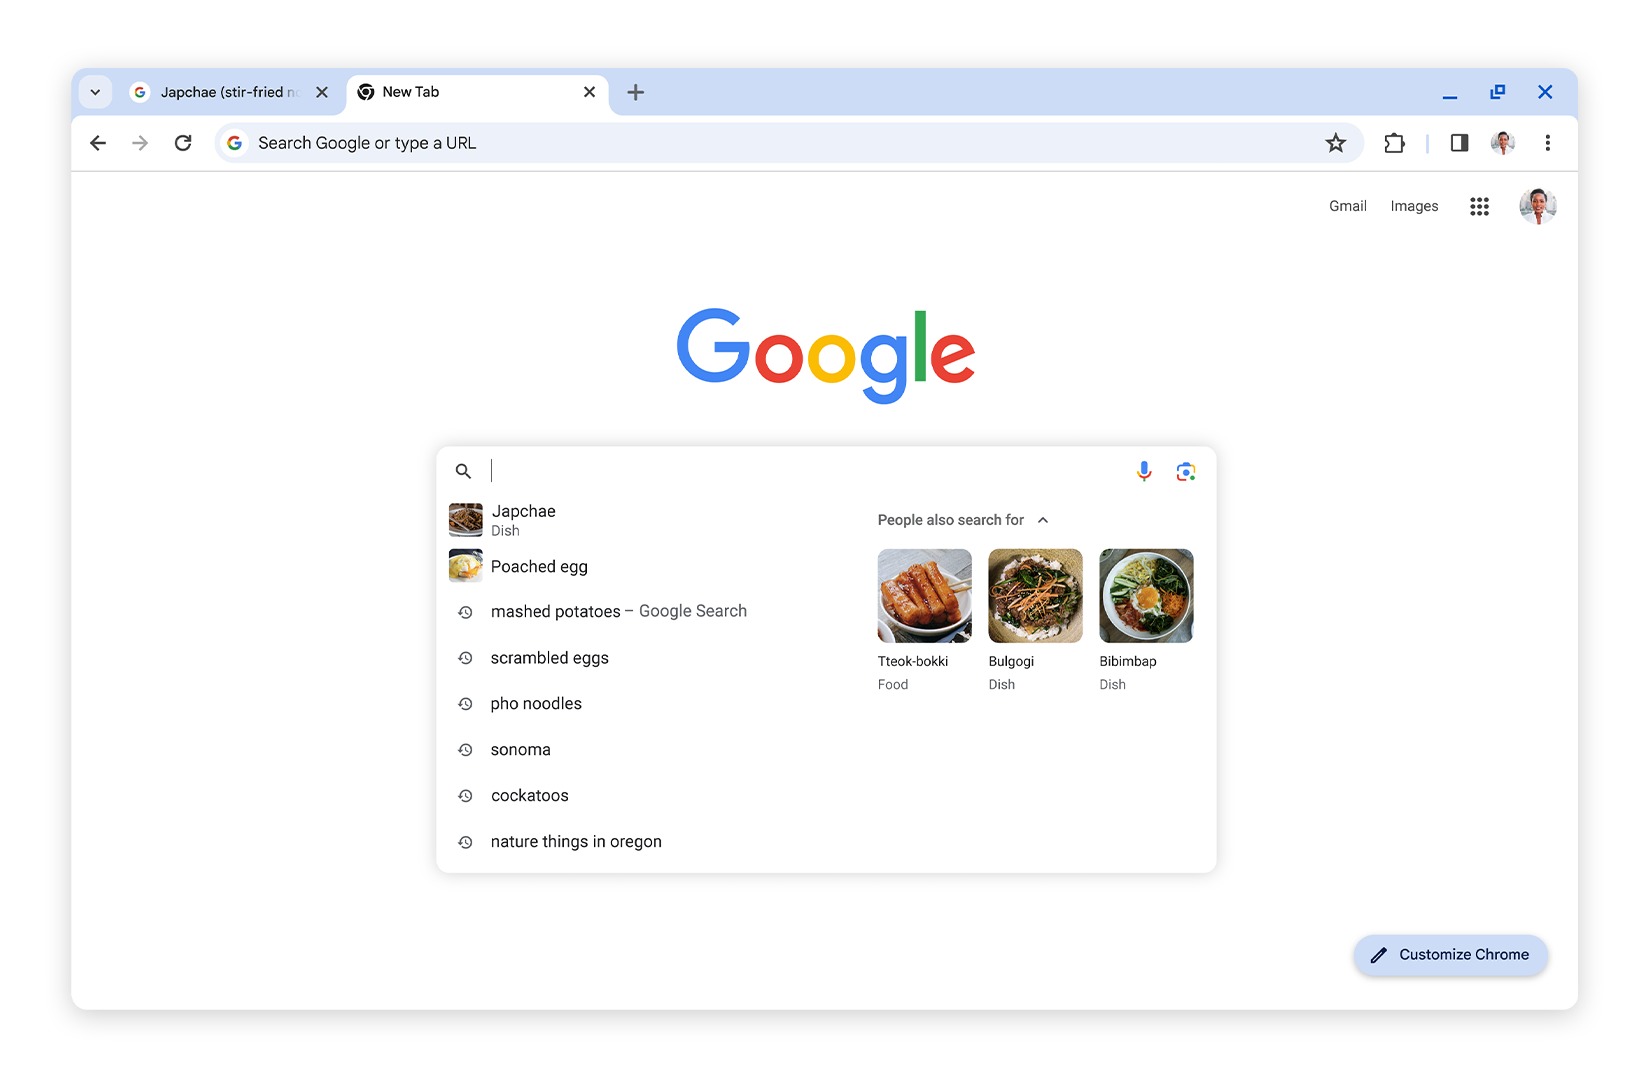 Captura de tela mostrando sugestões de pesquisa com imagens no Google Chrome baseadas no histórico de navegação